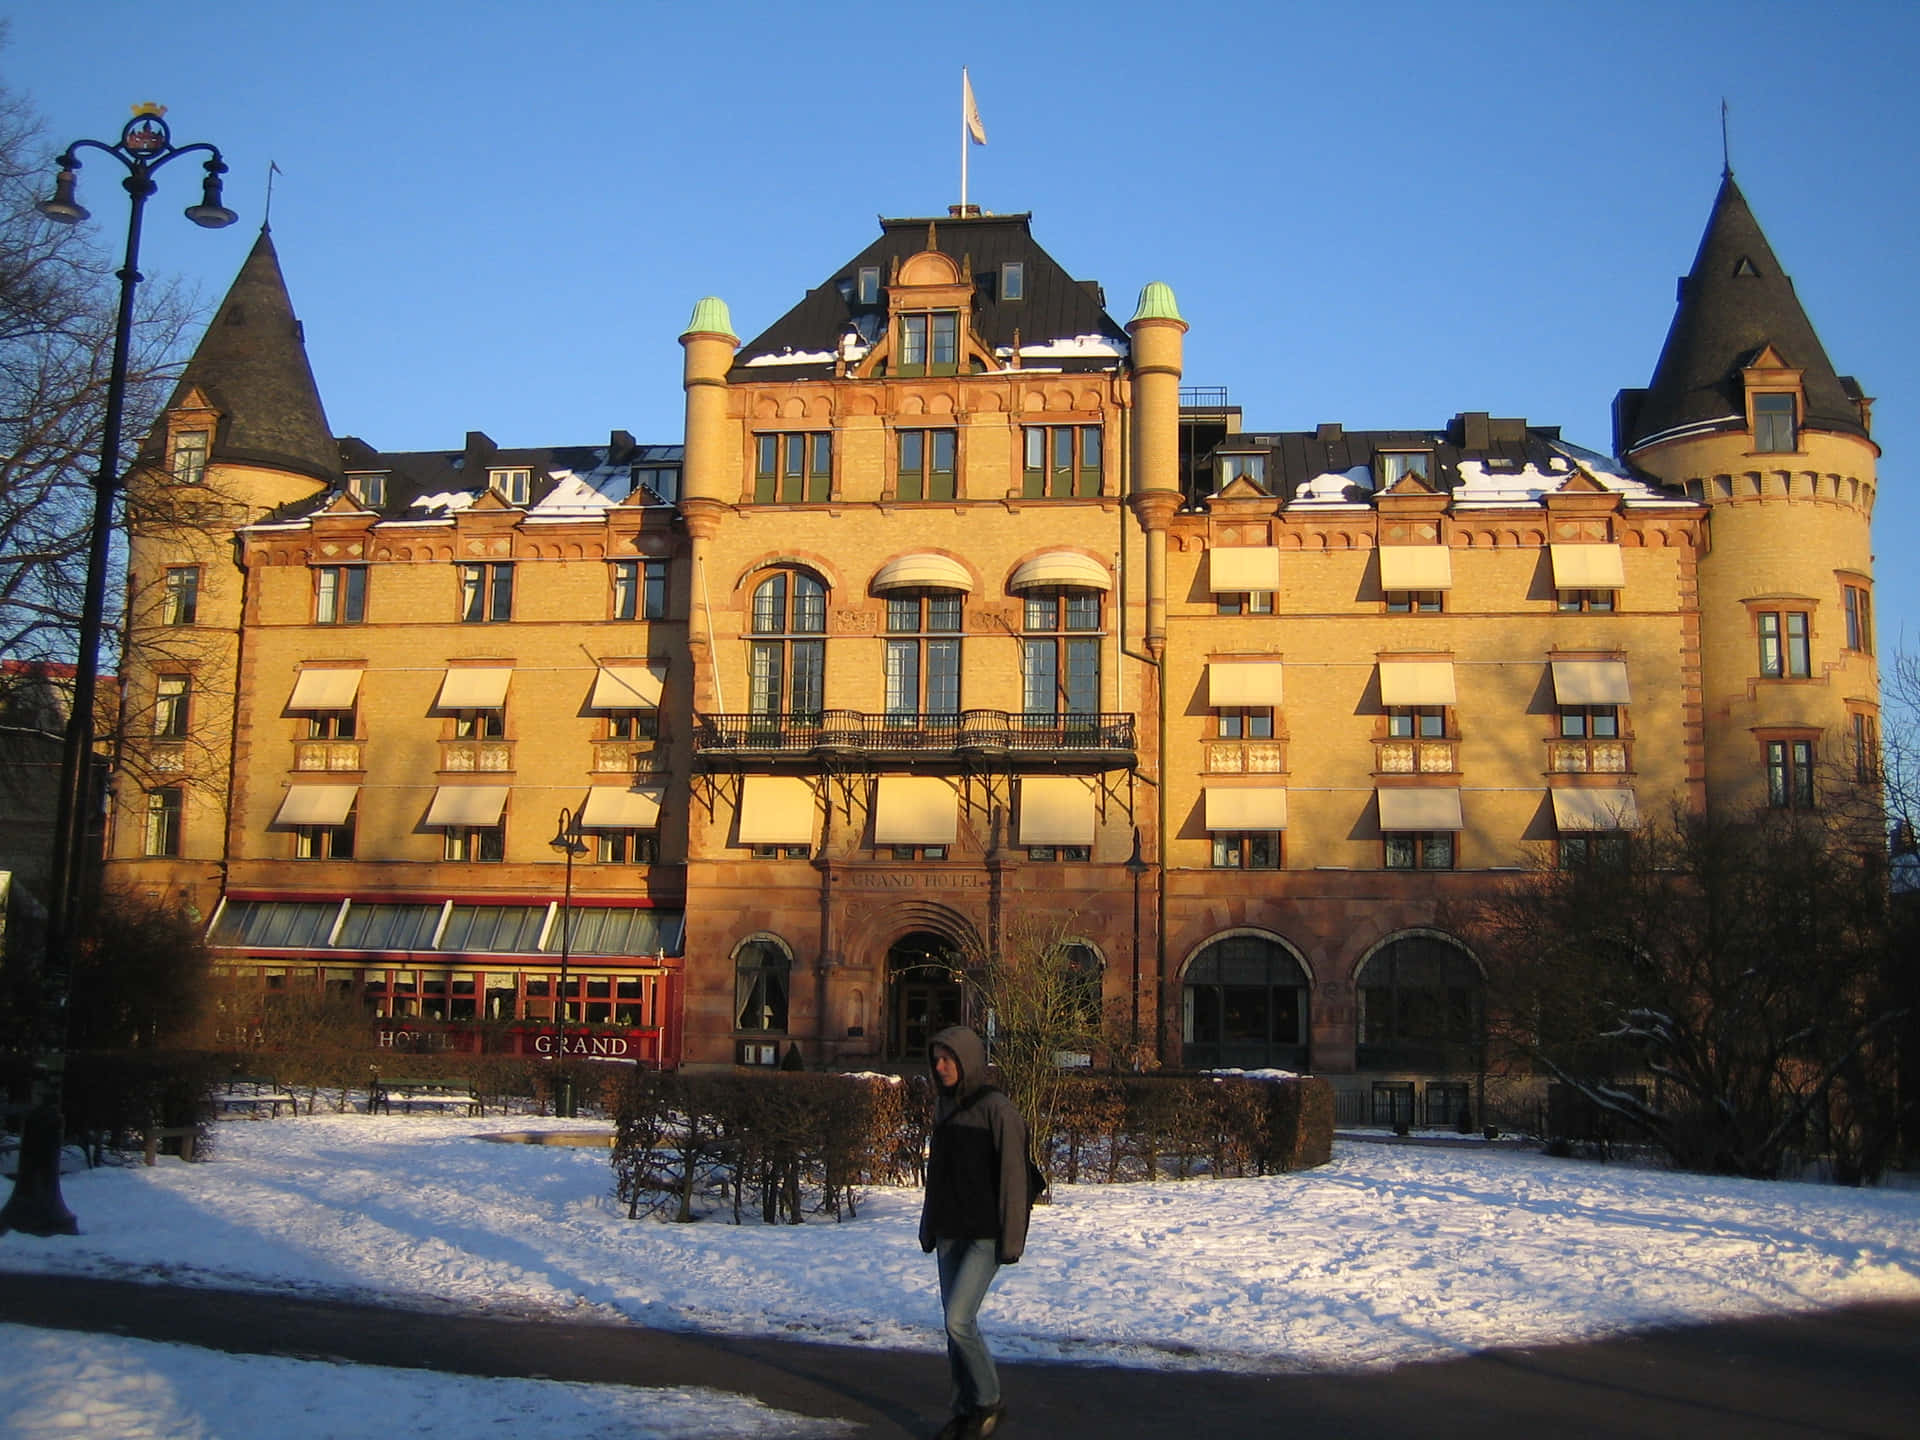 Grand Hotel Lund Winter Scene Wallpaper